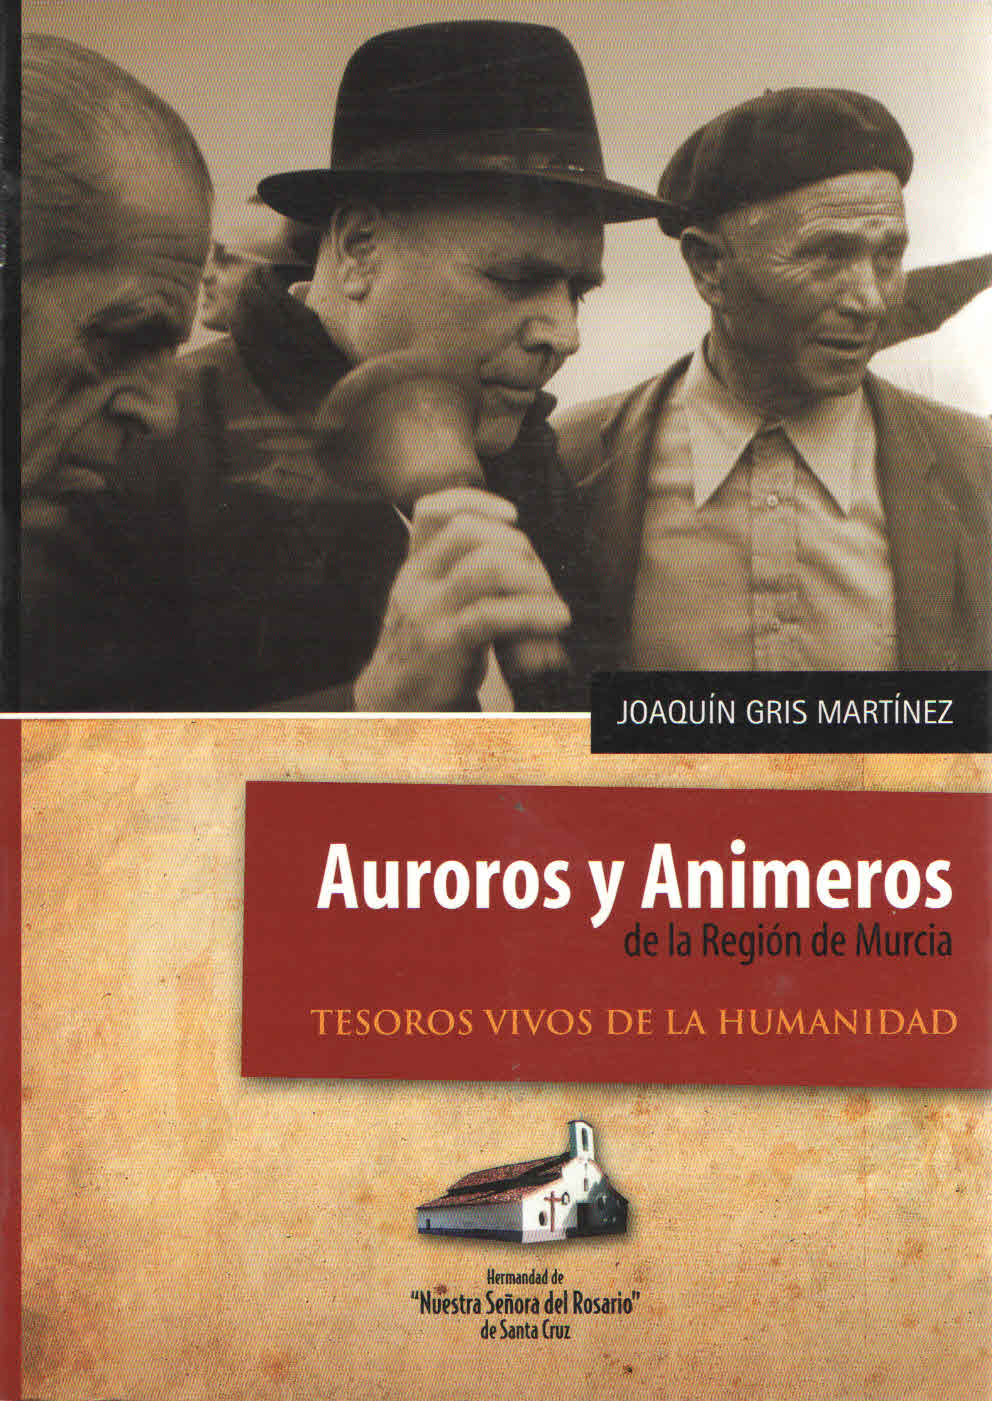 AUROROS Y ANIMEROS DE LA REGION DE MURCIA. Joaquin Gris Martinez.